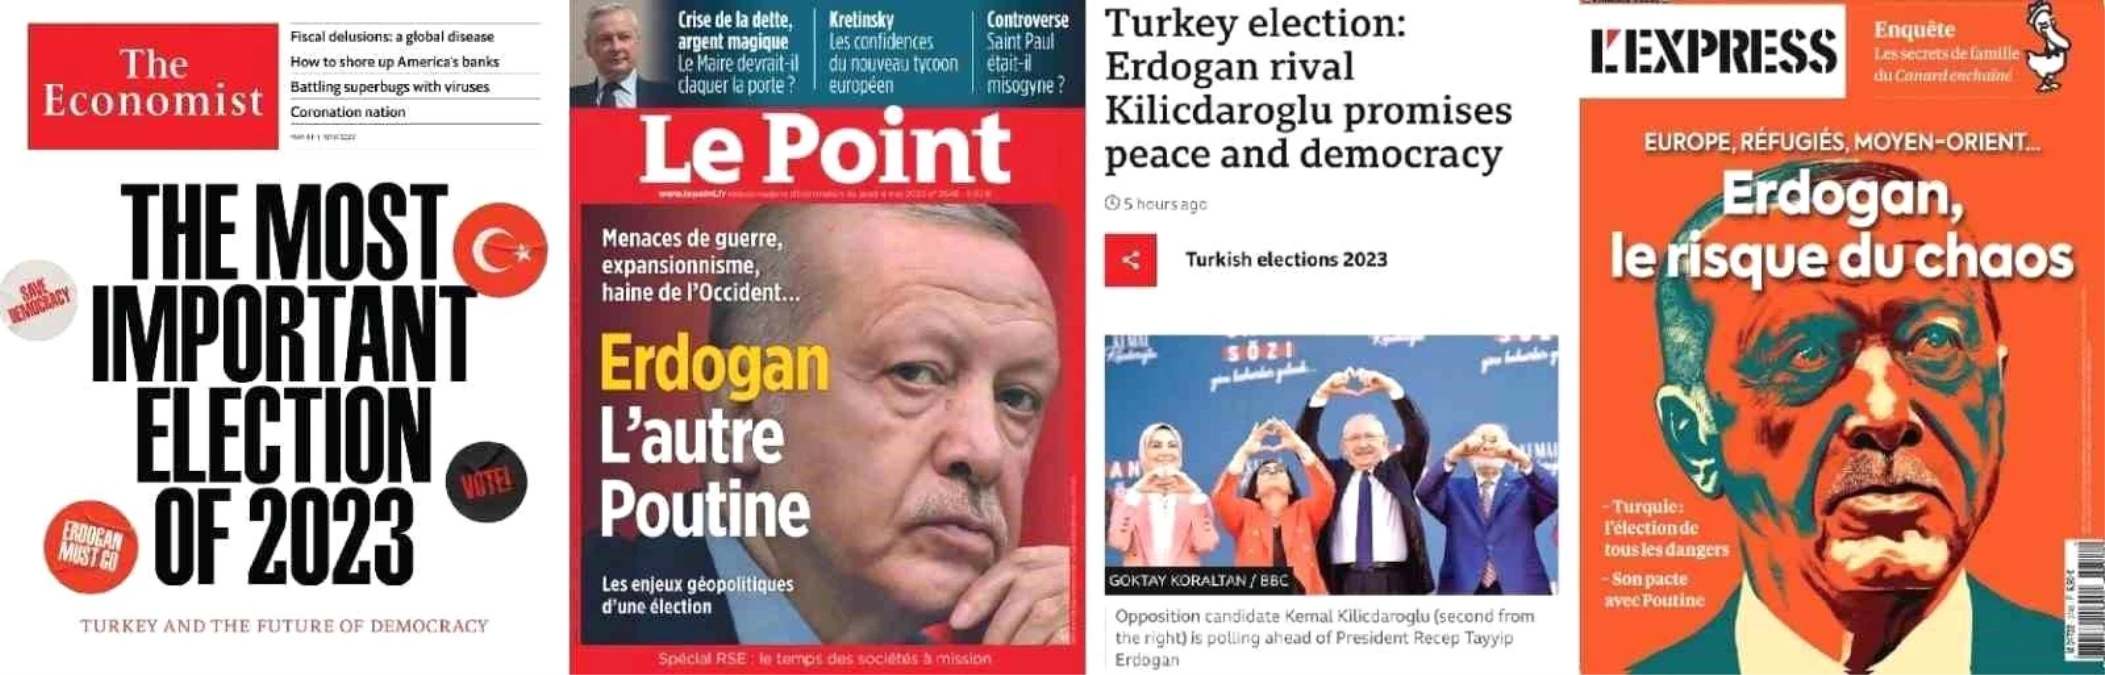 The Economist mecmuası Türkiye seçimlerini kapağına taşıdı